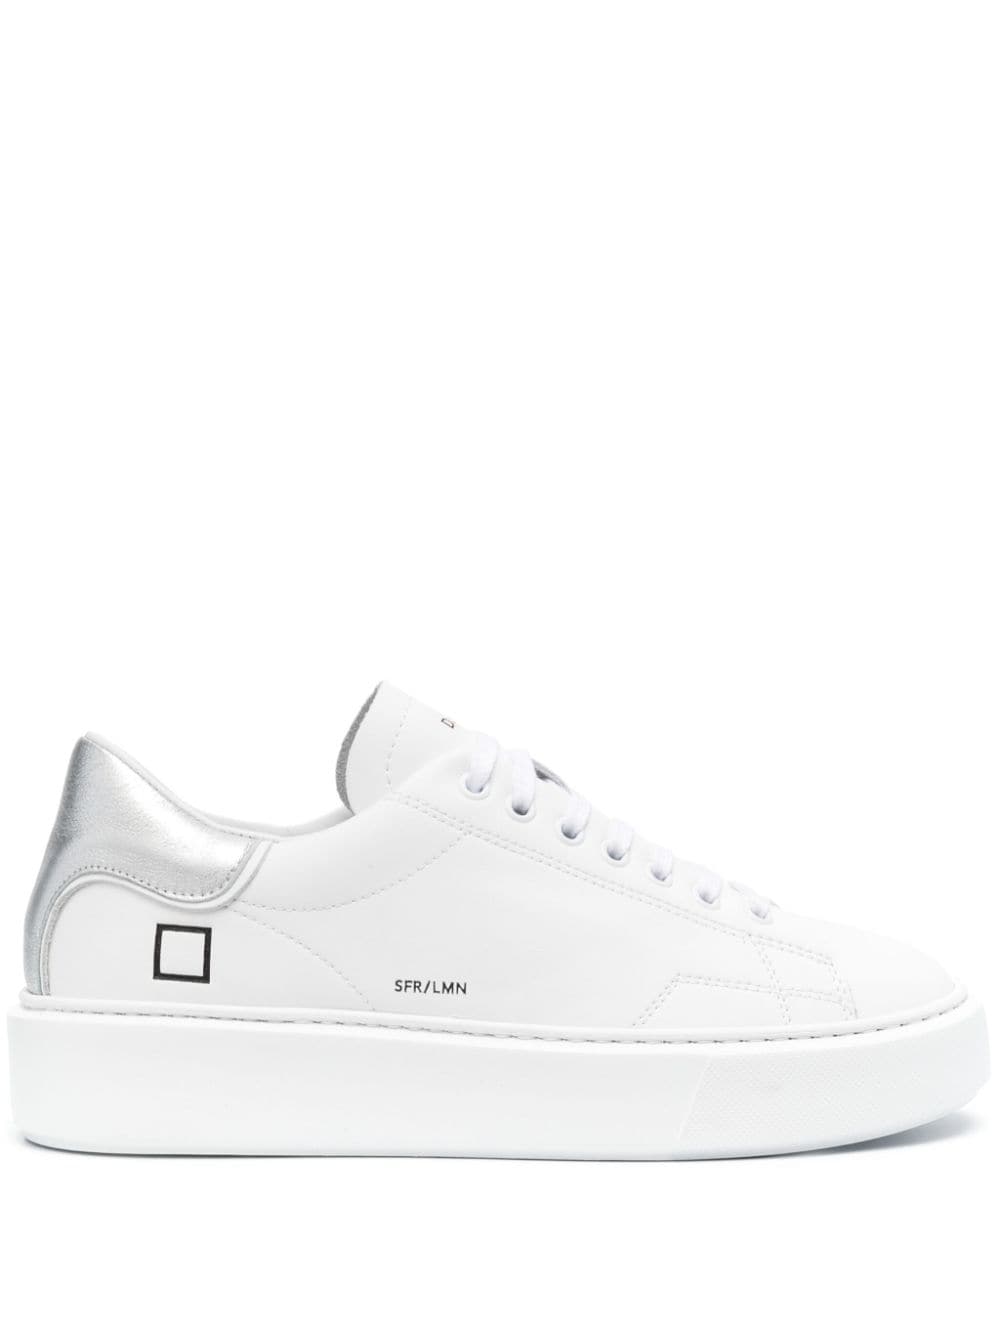 D.A.T.E. Sfera leather sneakers - White von D.A.T.E.